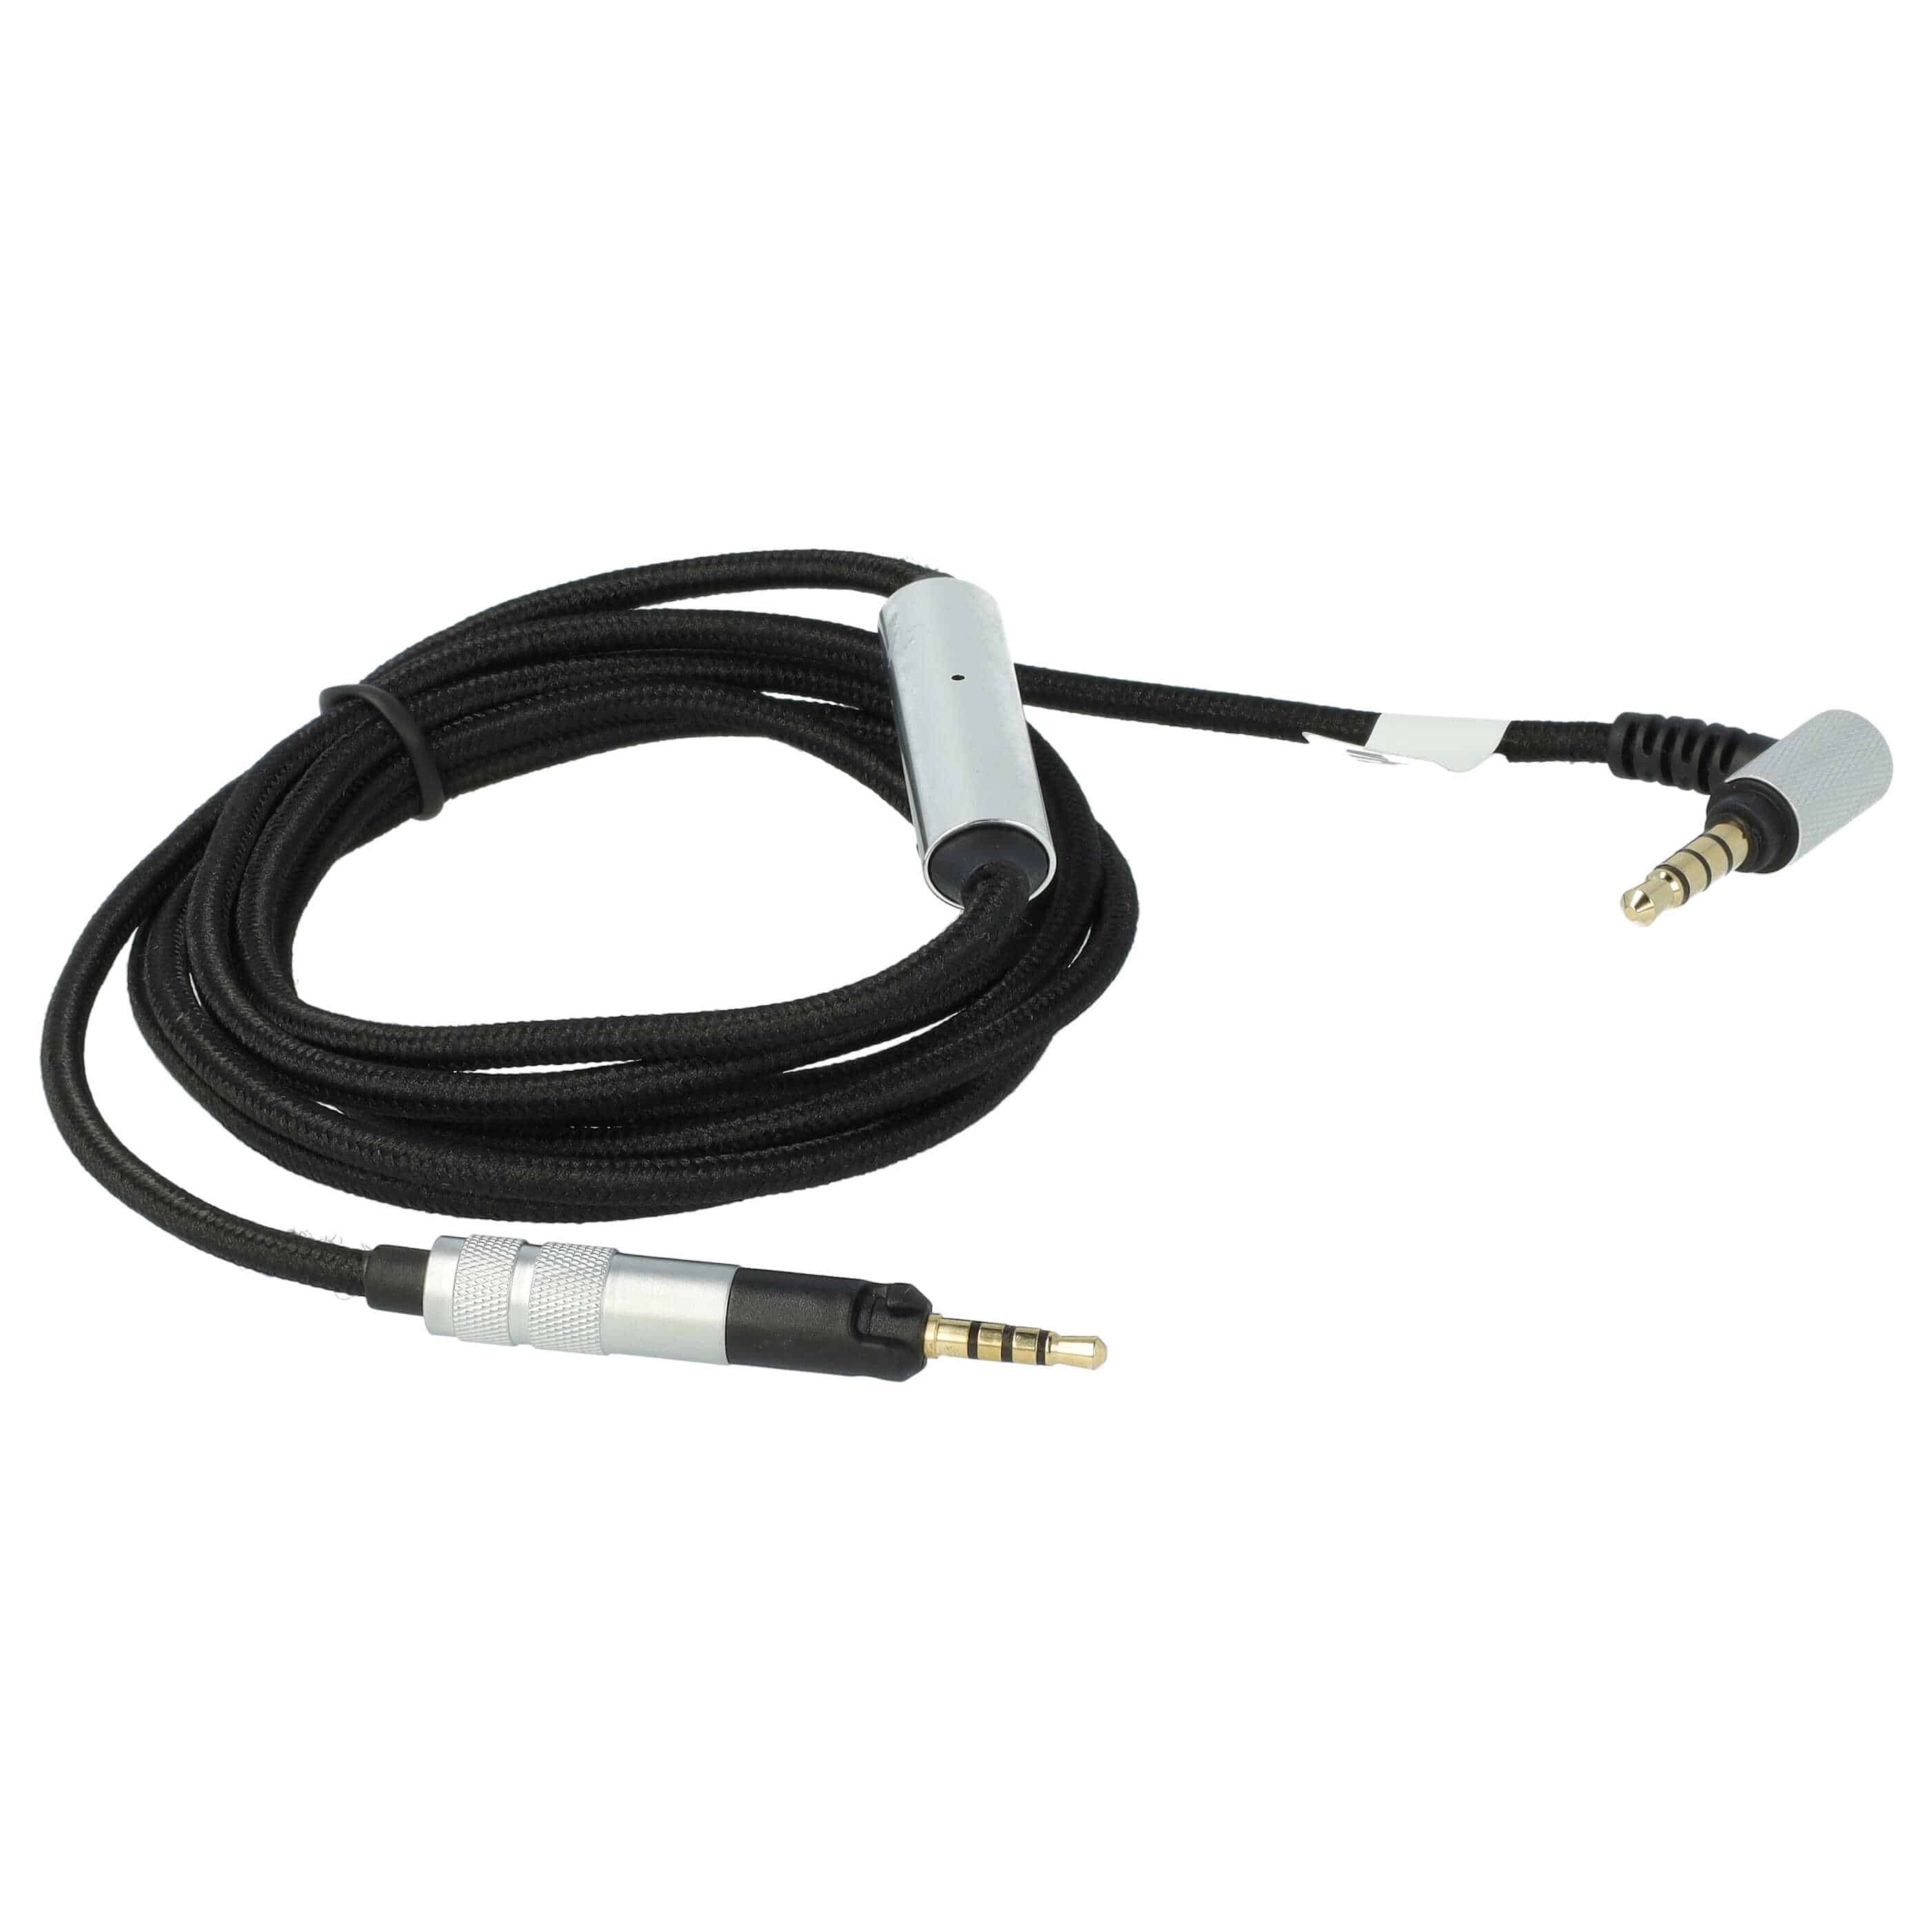 Kopfhörer Kabel passend für AKG, Sennheiser, Bose Y40 u.a., 150 cm, schwarz, silber